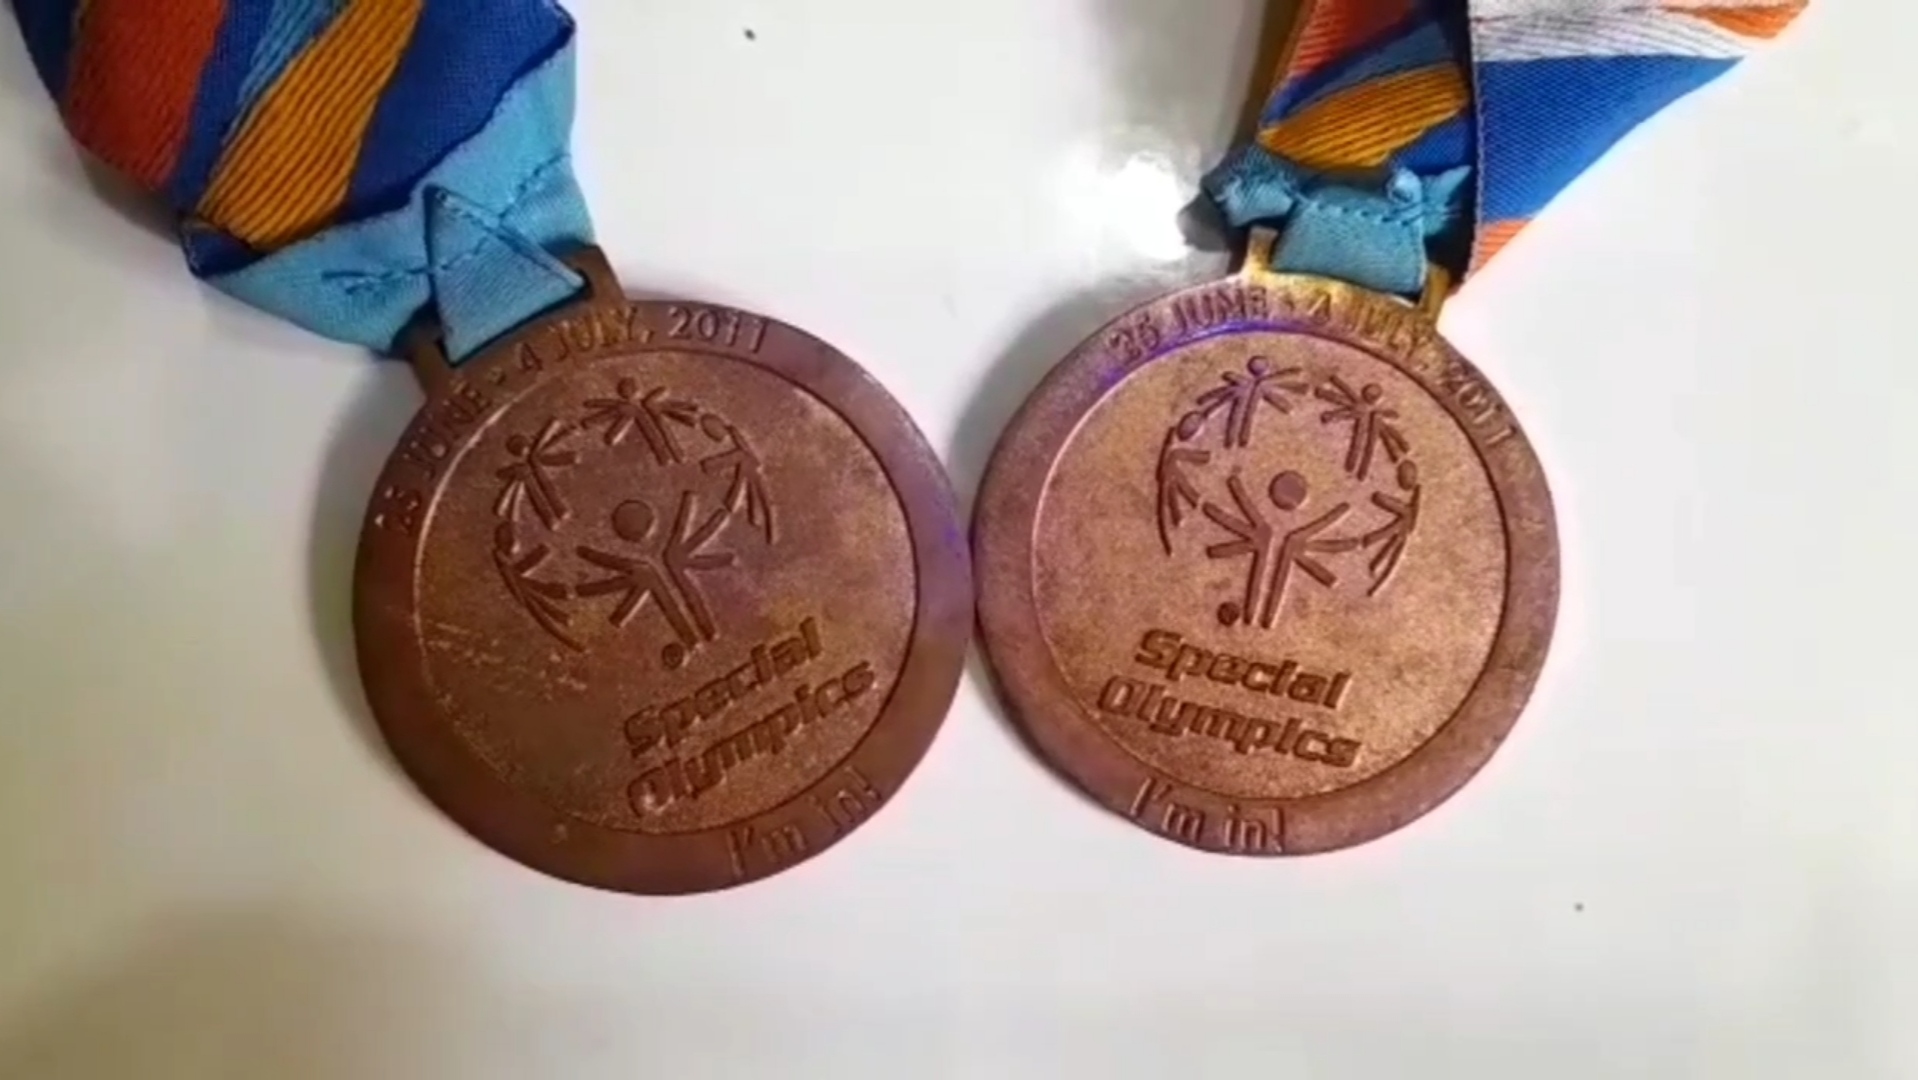 rewa olympics bronze medalist